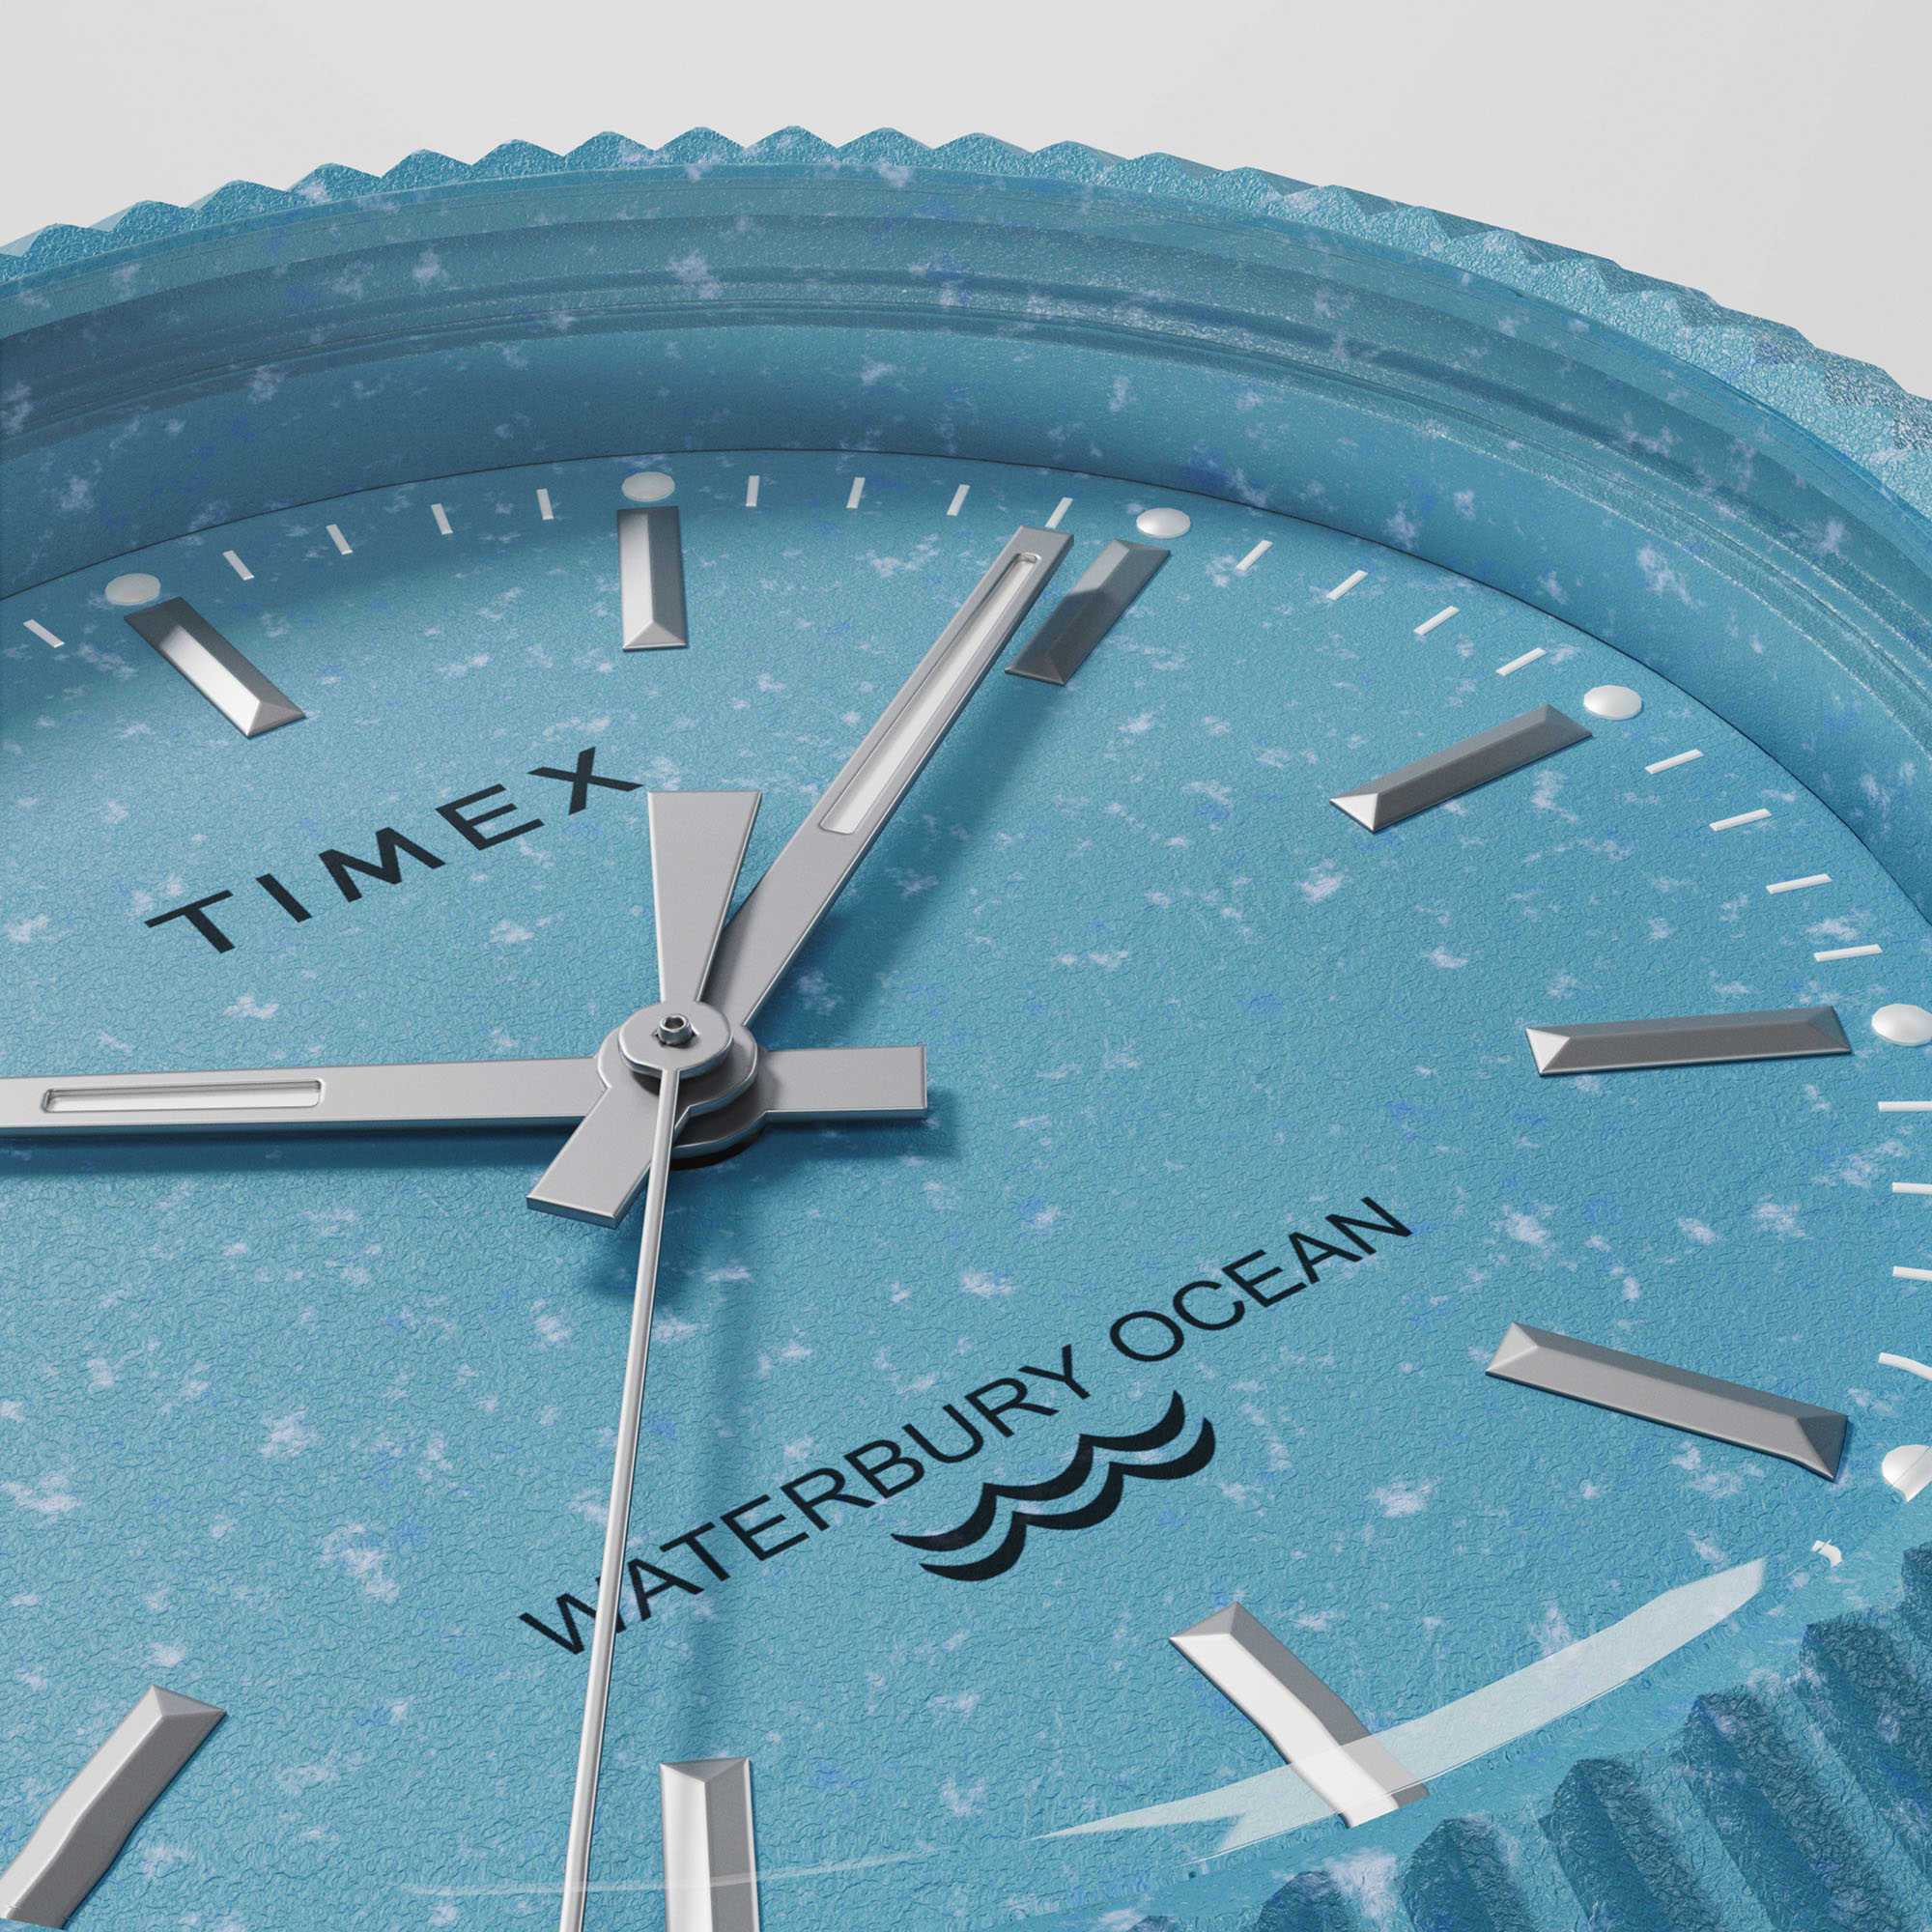 Timex представляет часы Waterbury Ocean